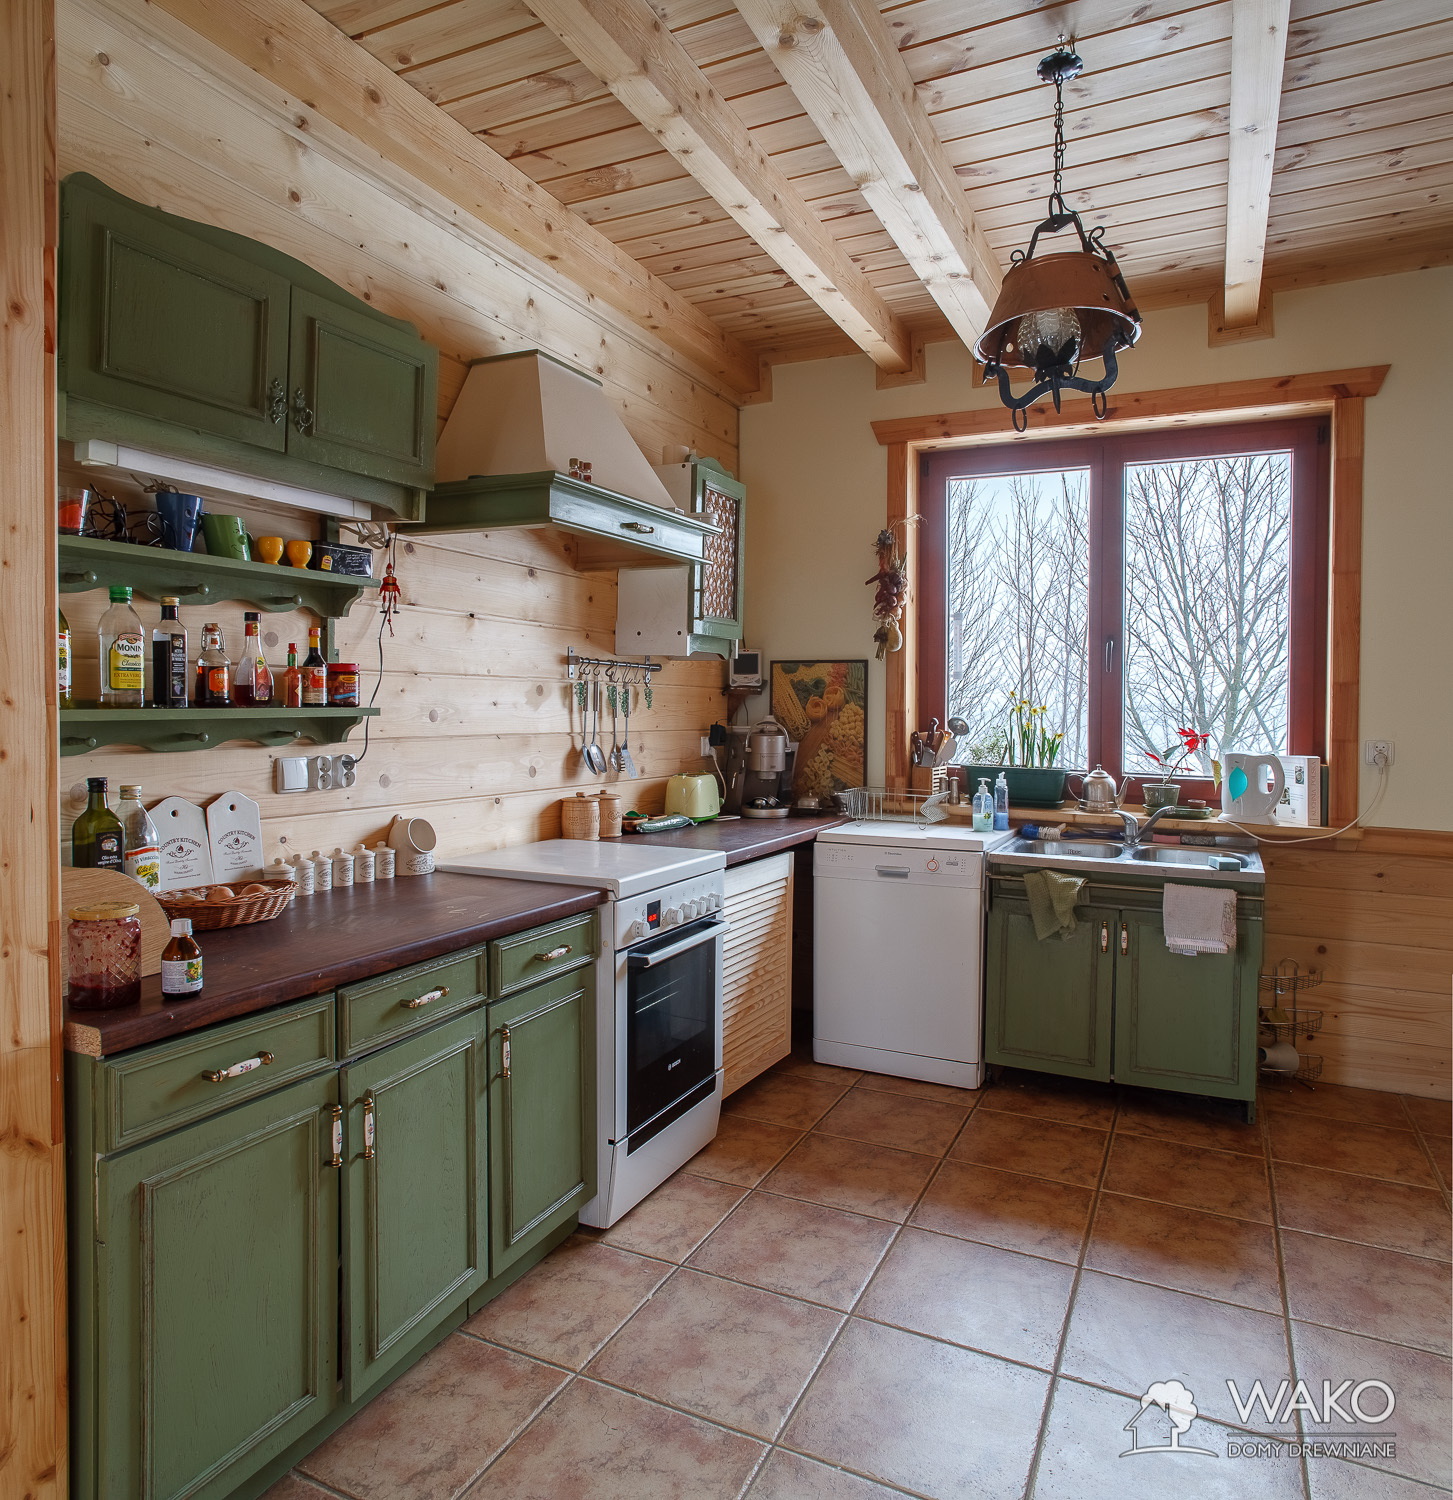 Kuchnia z zieonymi frontami we wnętrzu domu drewnianego